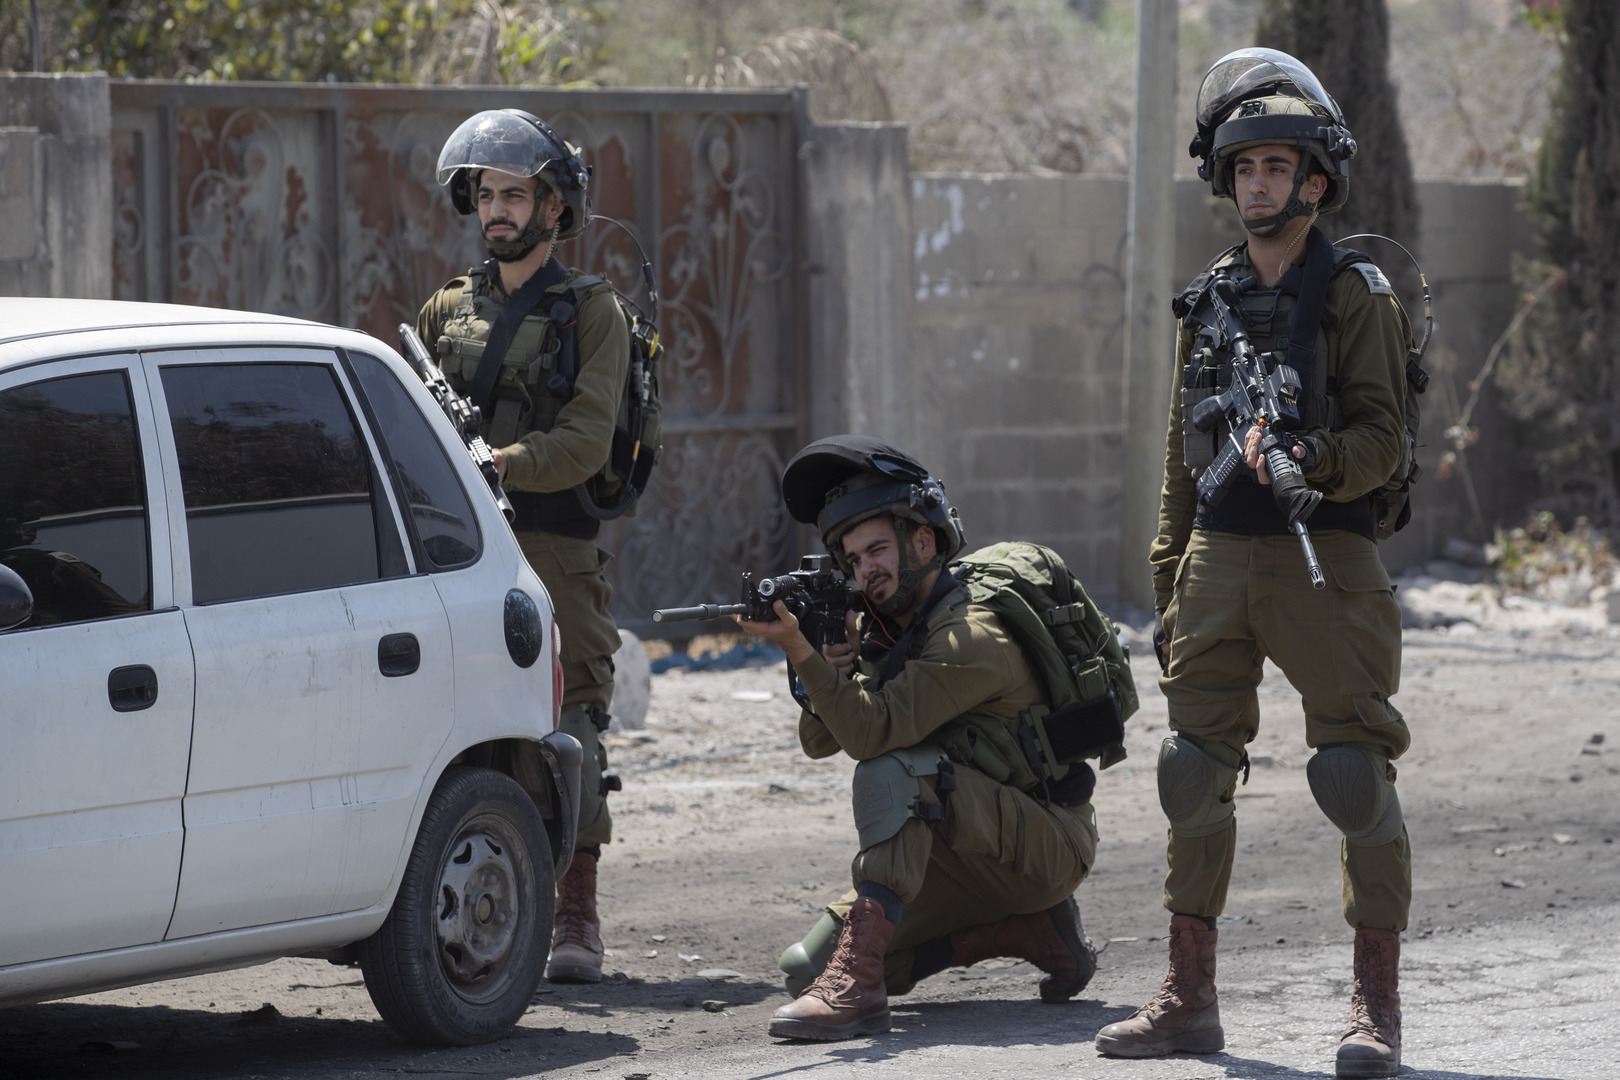 الجيش الإسرائيلي يكشف تفاصيل اغتيال المطارد إبراهيم النابلسي